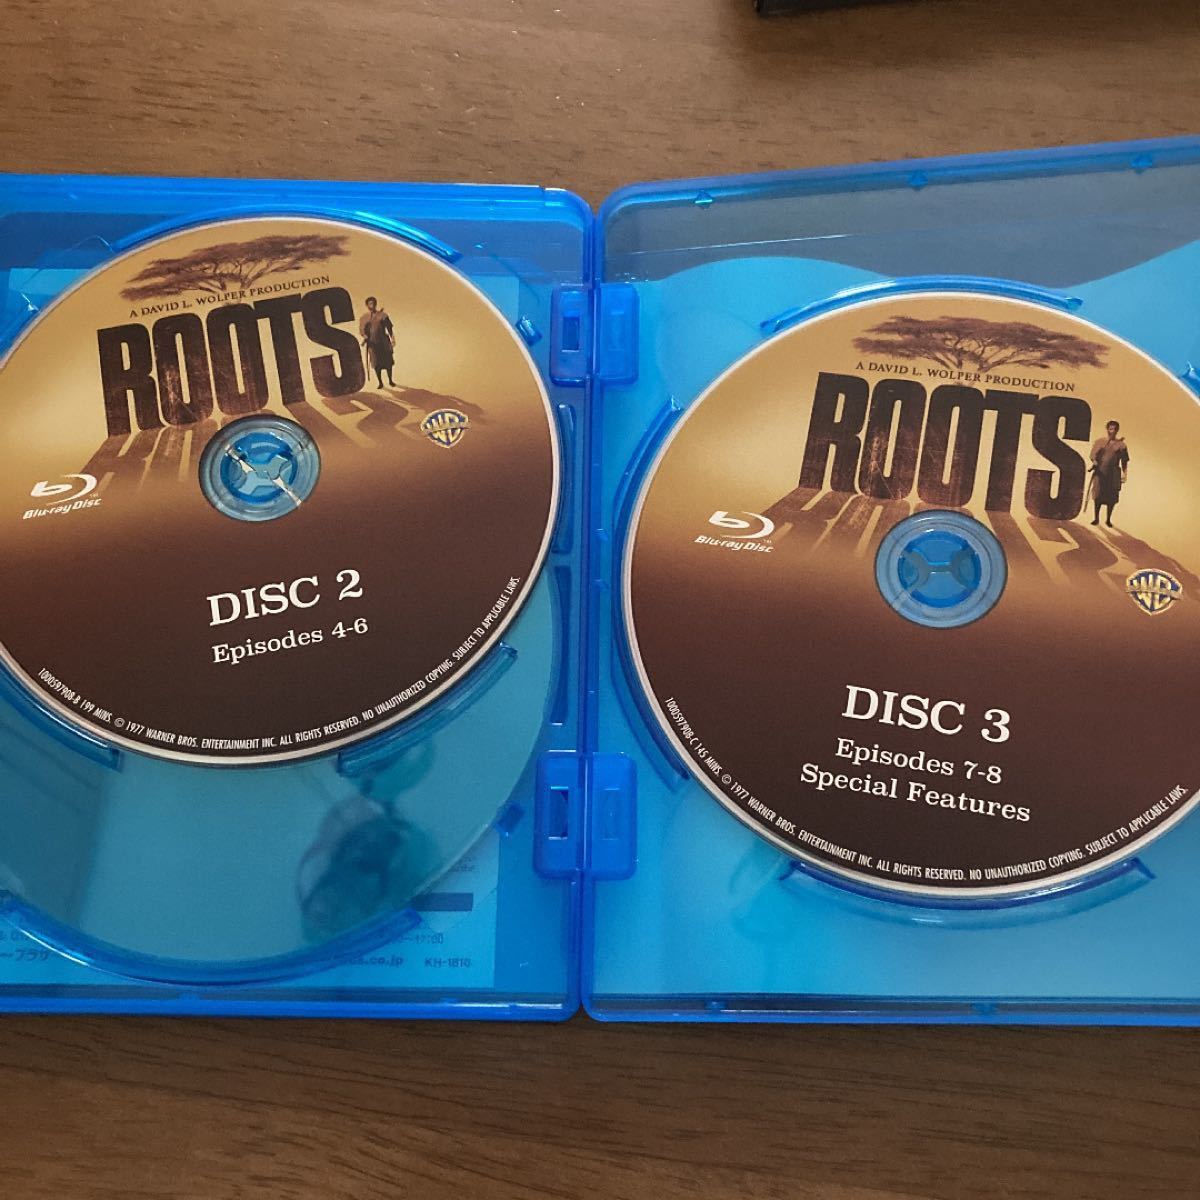 ルーツ ブルーレイ・コンプリートBOX〈3枚組〉 ROOTS Blu-ray 